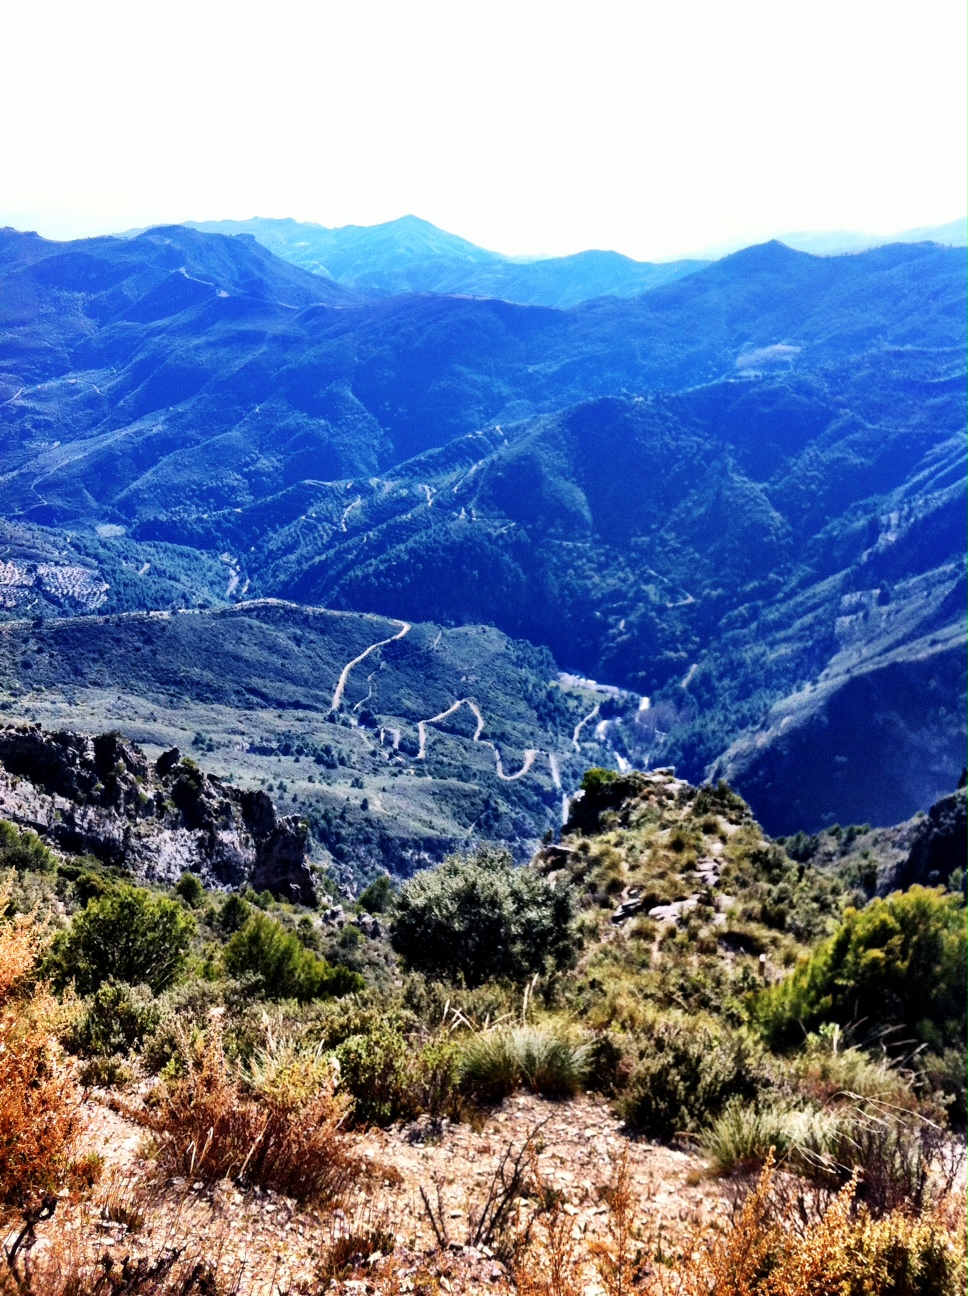 Goodbye Sea, Hello Hills – The Road to Granada